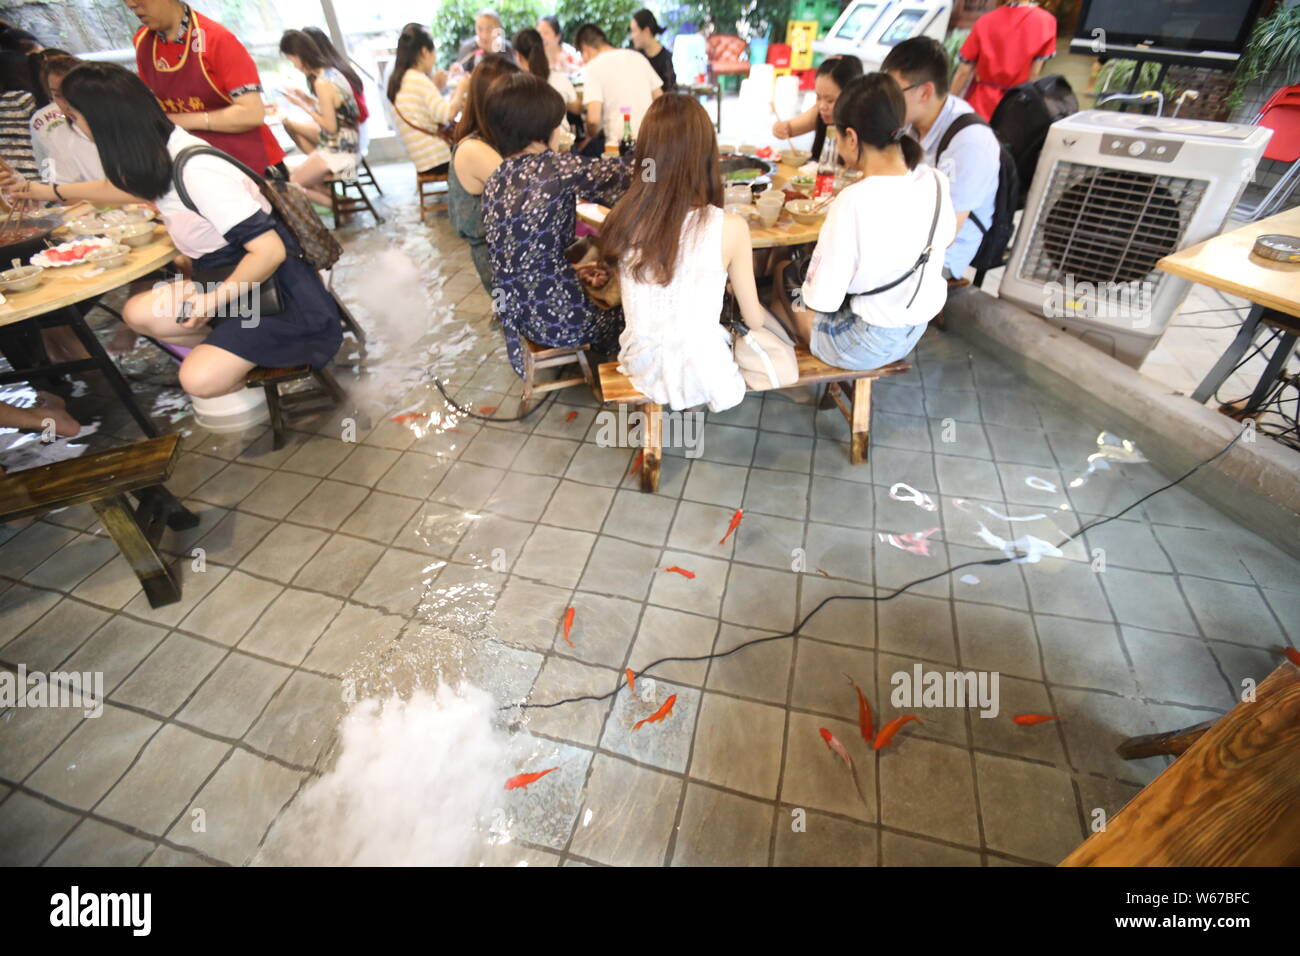 Kunden spielen mit Wasser ihre Füße zu kühlen, wie Sie würziger Eintopf in einem Restaurant in Chongqing, China, 11. Juli 2018 Essen. Zu gewinnen Menschen zu sp Essen Stockfoto